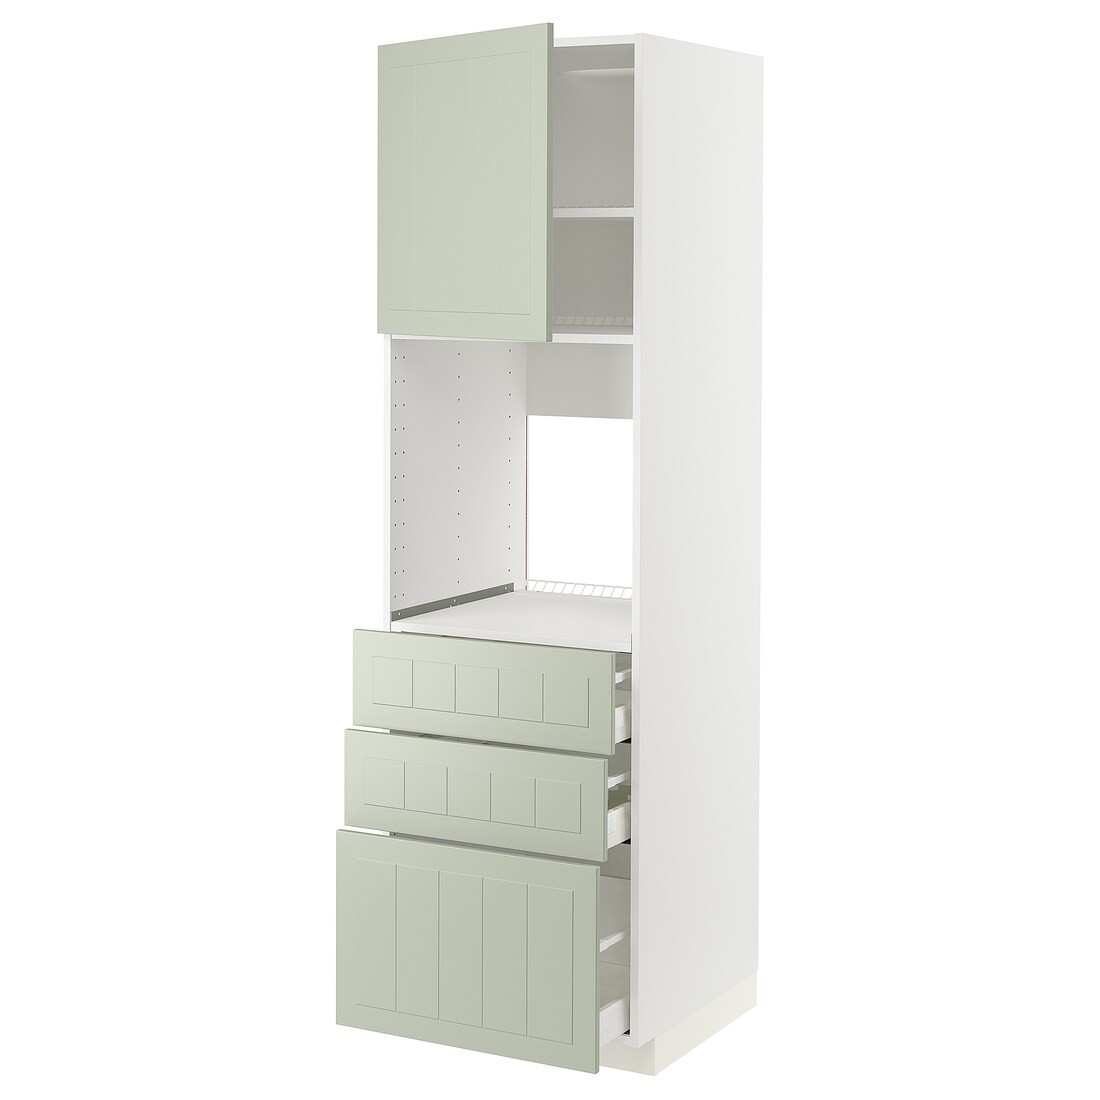 IKEA METOD МЕТОД / MAXIMERA МАКСИМЕРА Высокий шкаф для духовки, белый / Stensund светло-зеленый, 60x60x200 см 39486208 394.862.08